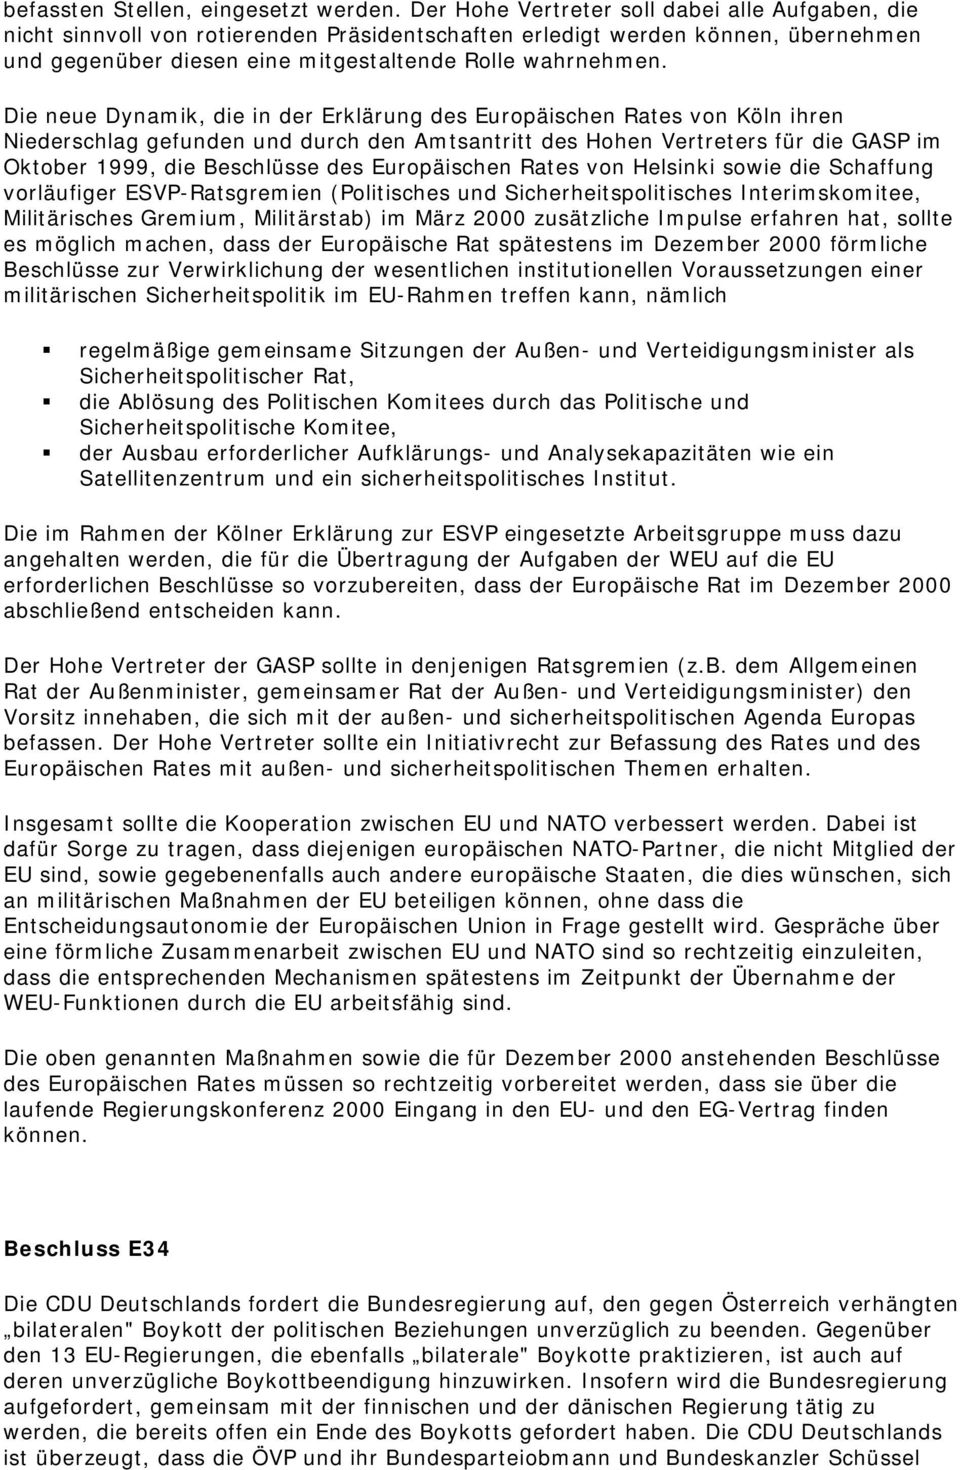 Die neue Dynamik, die in der Erklärung des Europäischen Rates von Köln ihren Niederschlag gefunden und durch den Amtsantritt des Hohen Vertreters für die GASP im Oktober 1999, die Beschlüsse des